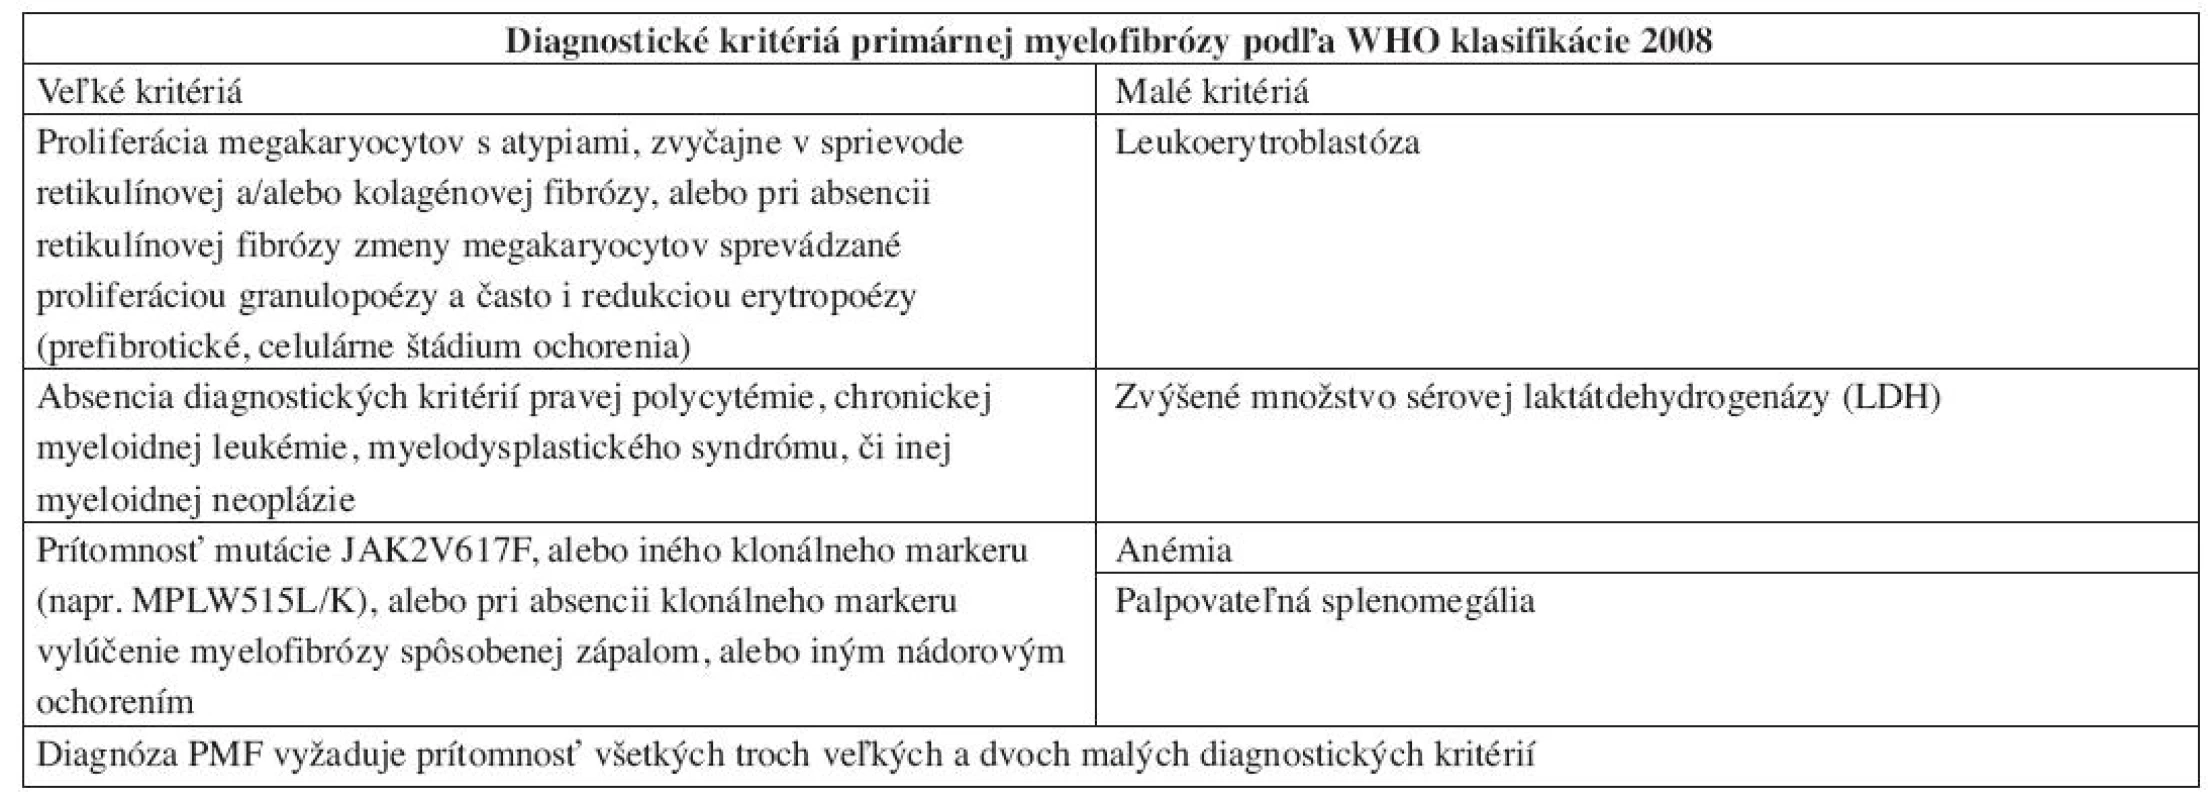 Diagnostické kritériá PMF podľa WHO klasifikácie 2008.